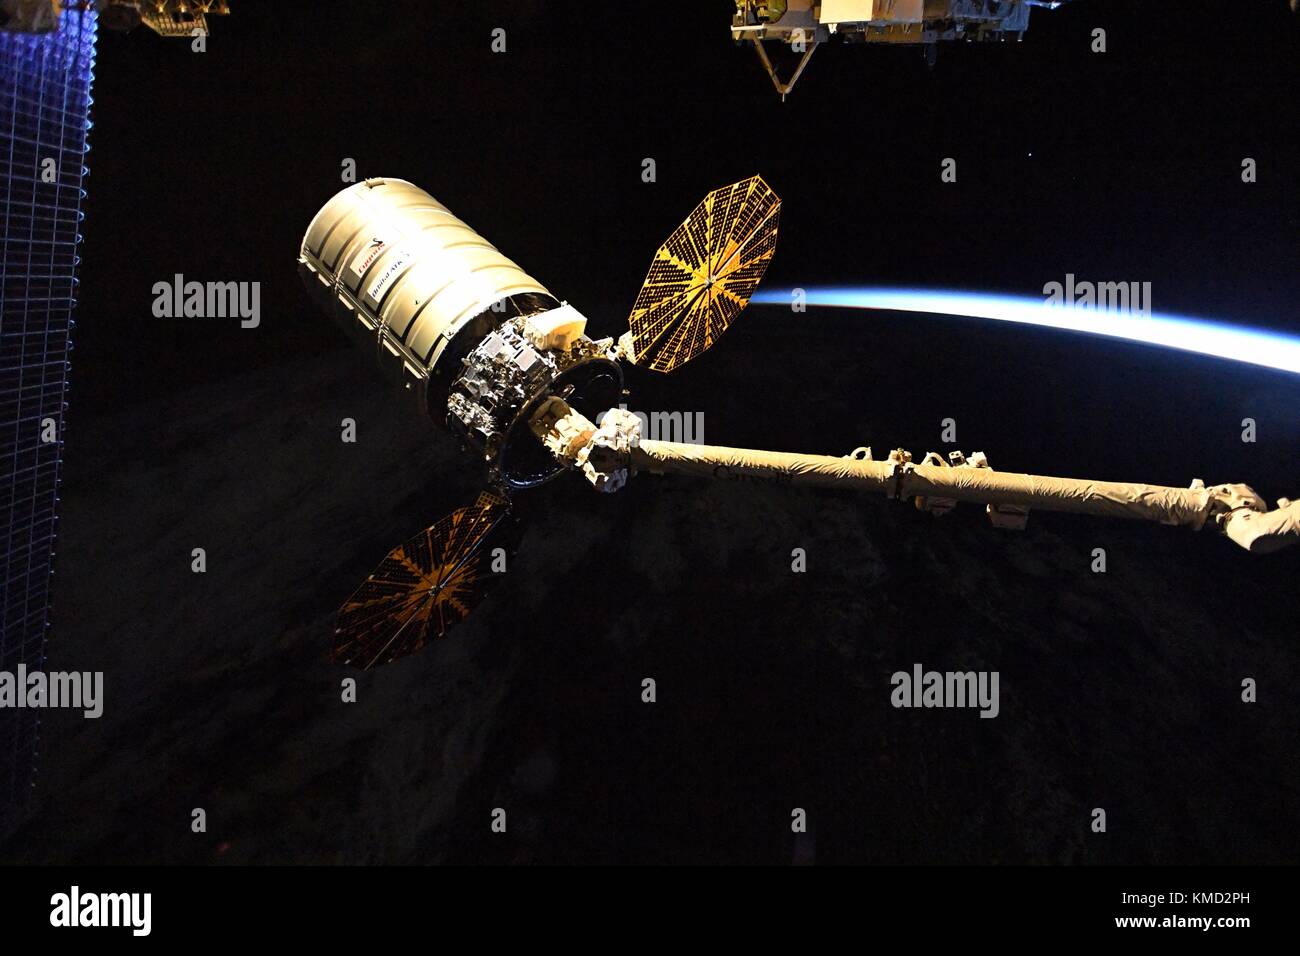 L'orbitale atk cygnus cargo veicolo spaziale è rilasciato dal canada il braccio 2 dalla stazione spaziale internazionale il 6 dicembre 2017 in orbita intorno alla terra. cygnus verrà distribuito 14 cubesats dal nanoracks deployer e sarà successivamente bruciato sul rientro distruttivo nell'atmosfera terrestre. Foto Stock